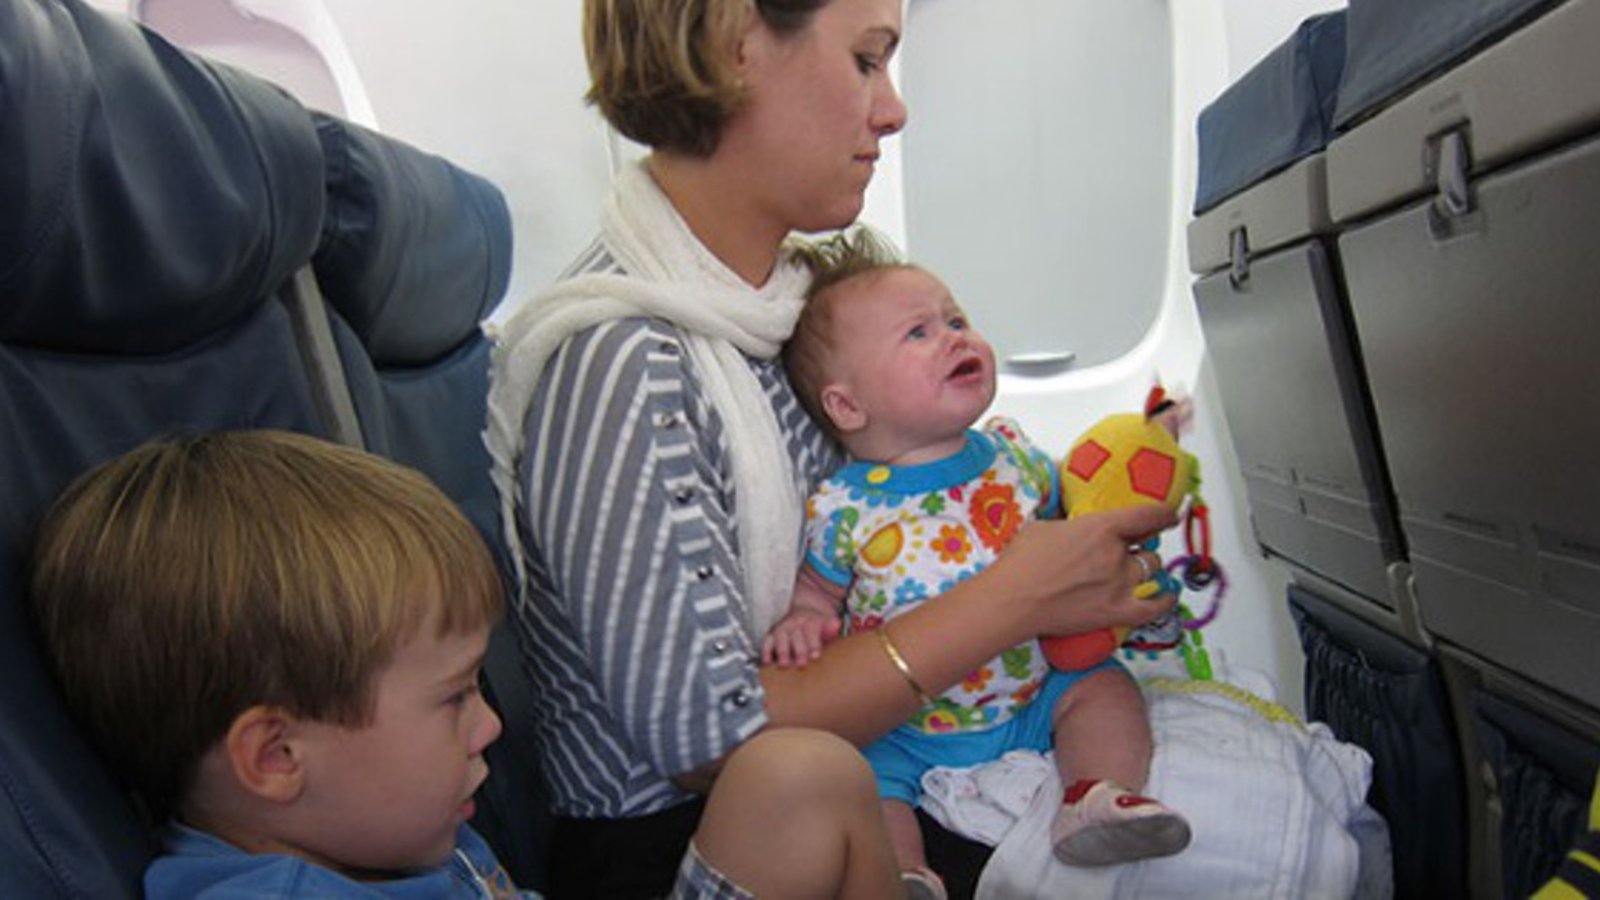 Lors de mon dernier voyage, un bébé a remis ceci à tous les passagers sur le vol avec une petite note disant ceci: 